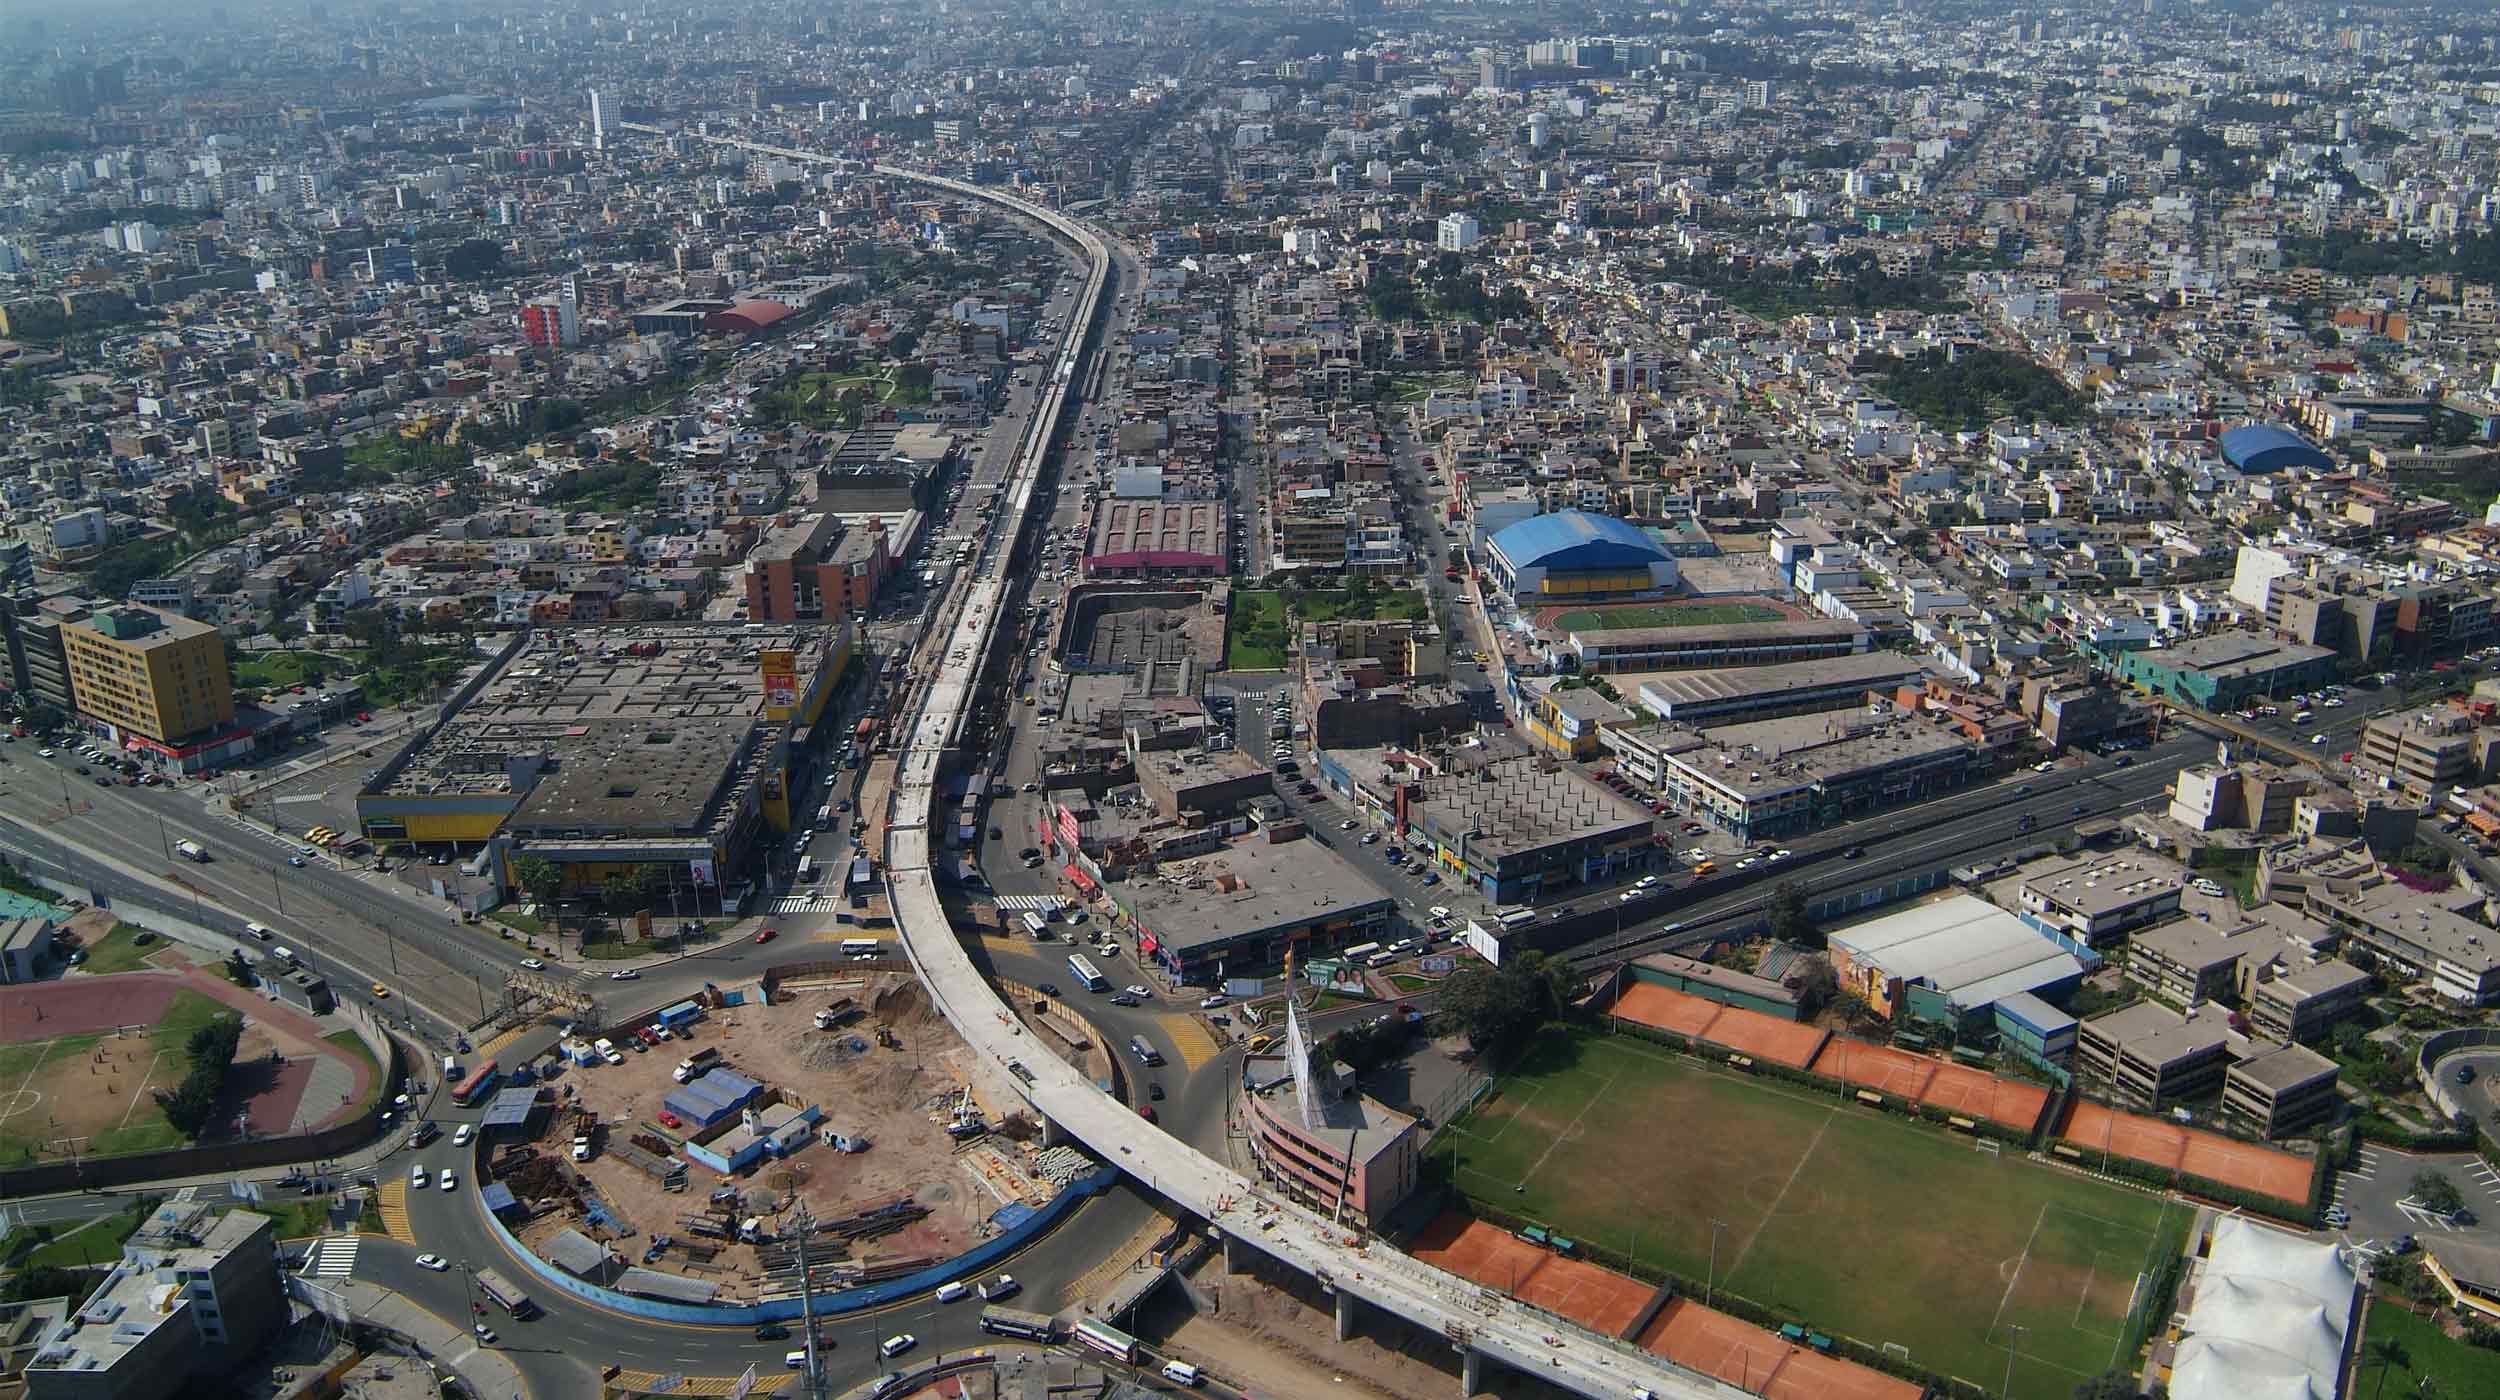 Ubicado en Ciudad de Lima, este proyecto emblemático consiste en la construcción de un viaducto elevado de 12.5 km y 8 estaciones.